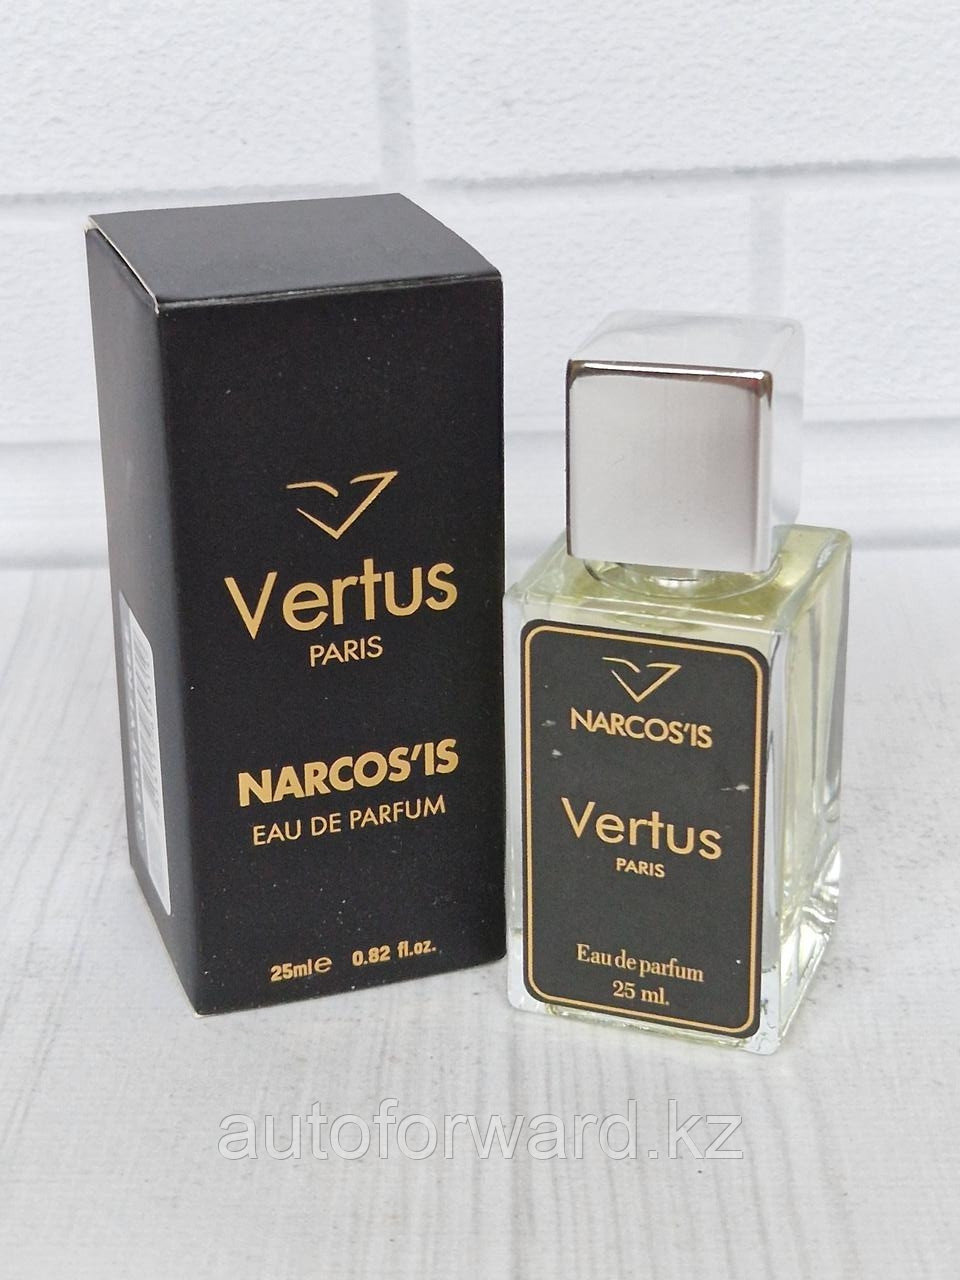 Vertus Narcos'is 25 ml